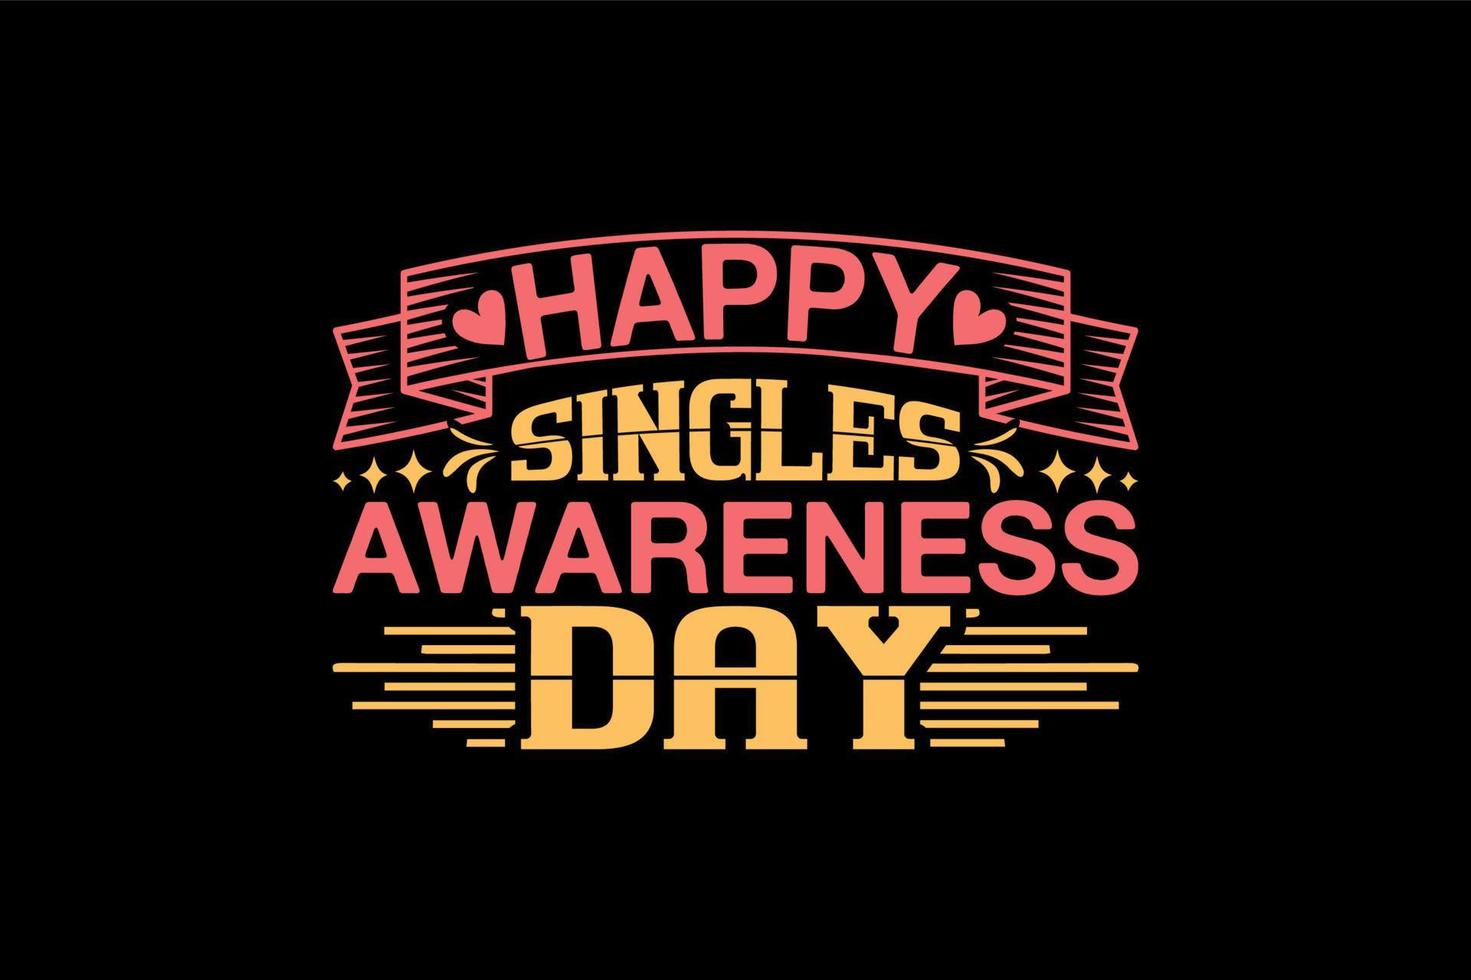 Happy Singles Awareness Day, eintägiges T-Shirt-Design vektor